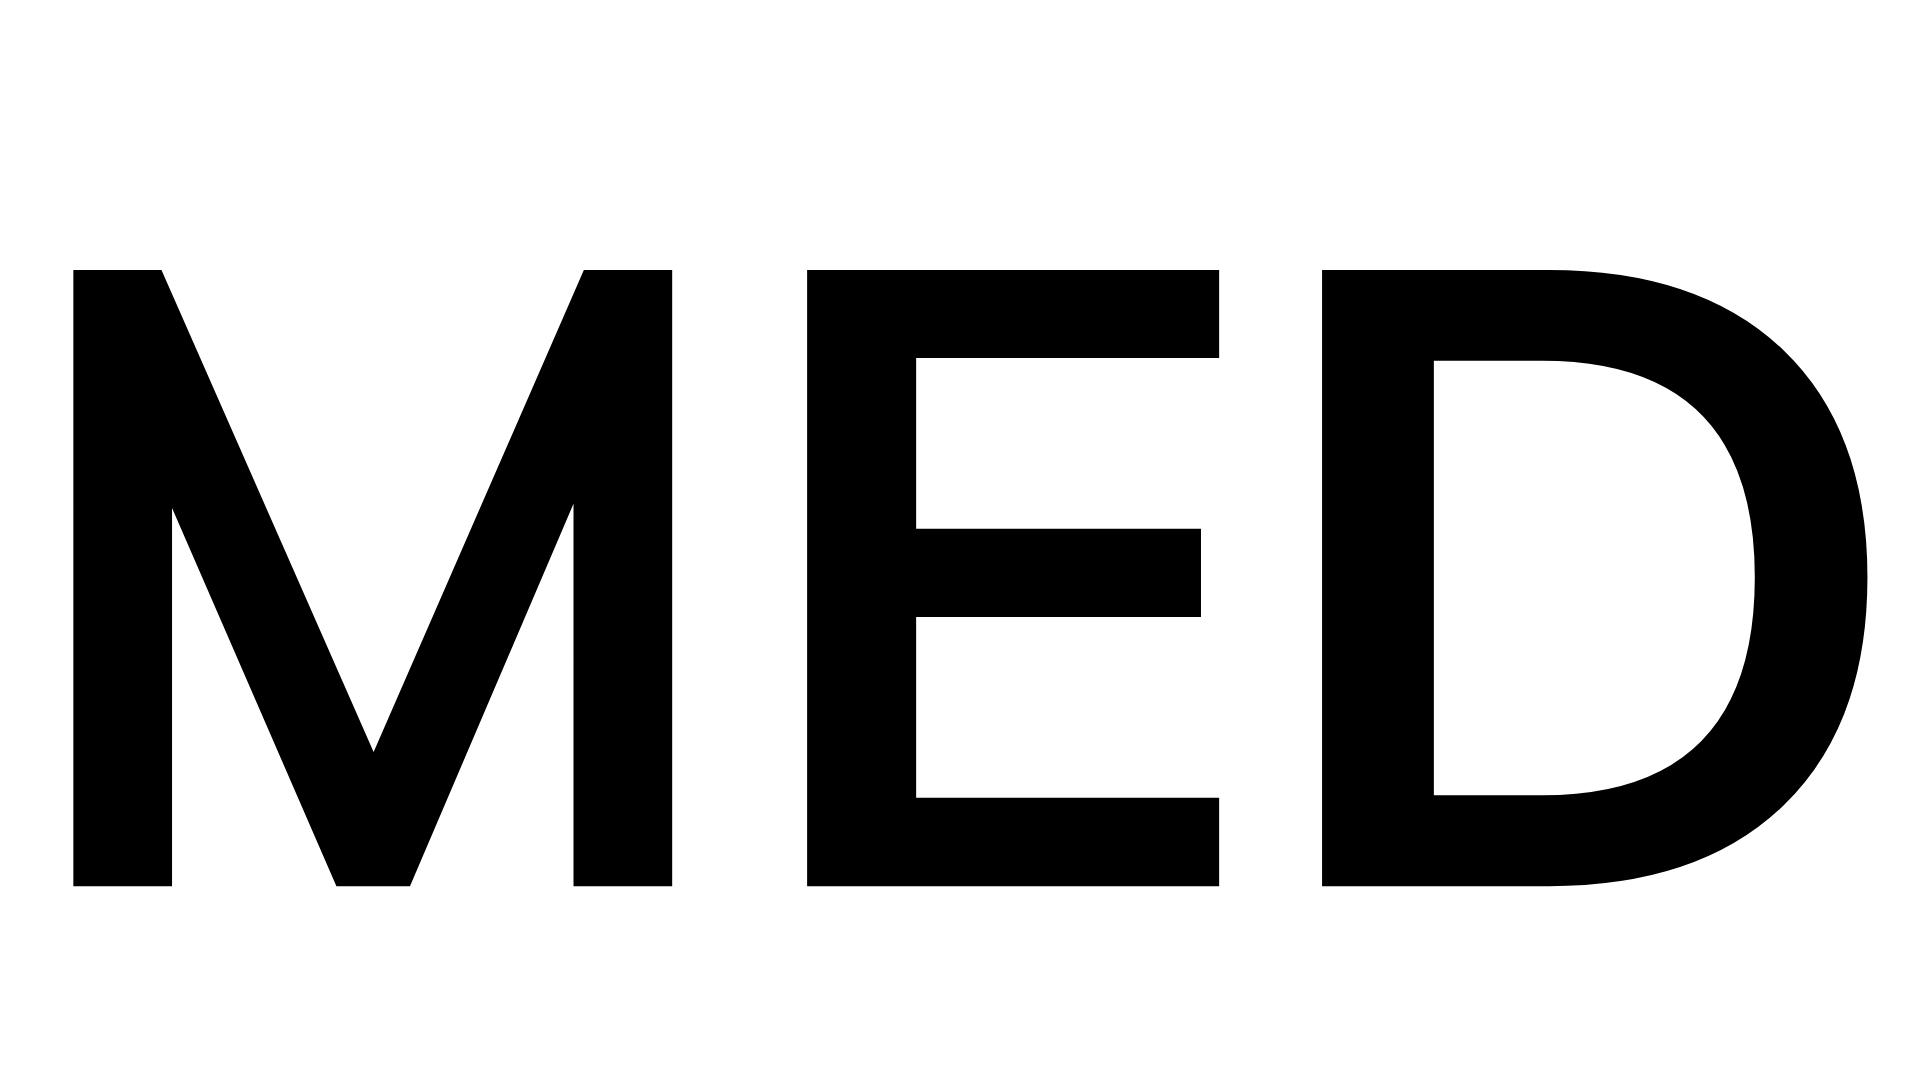 Medium (MED)